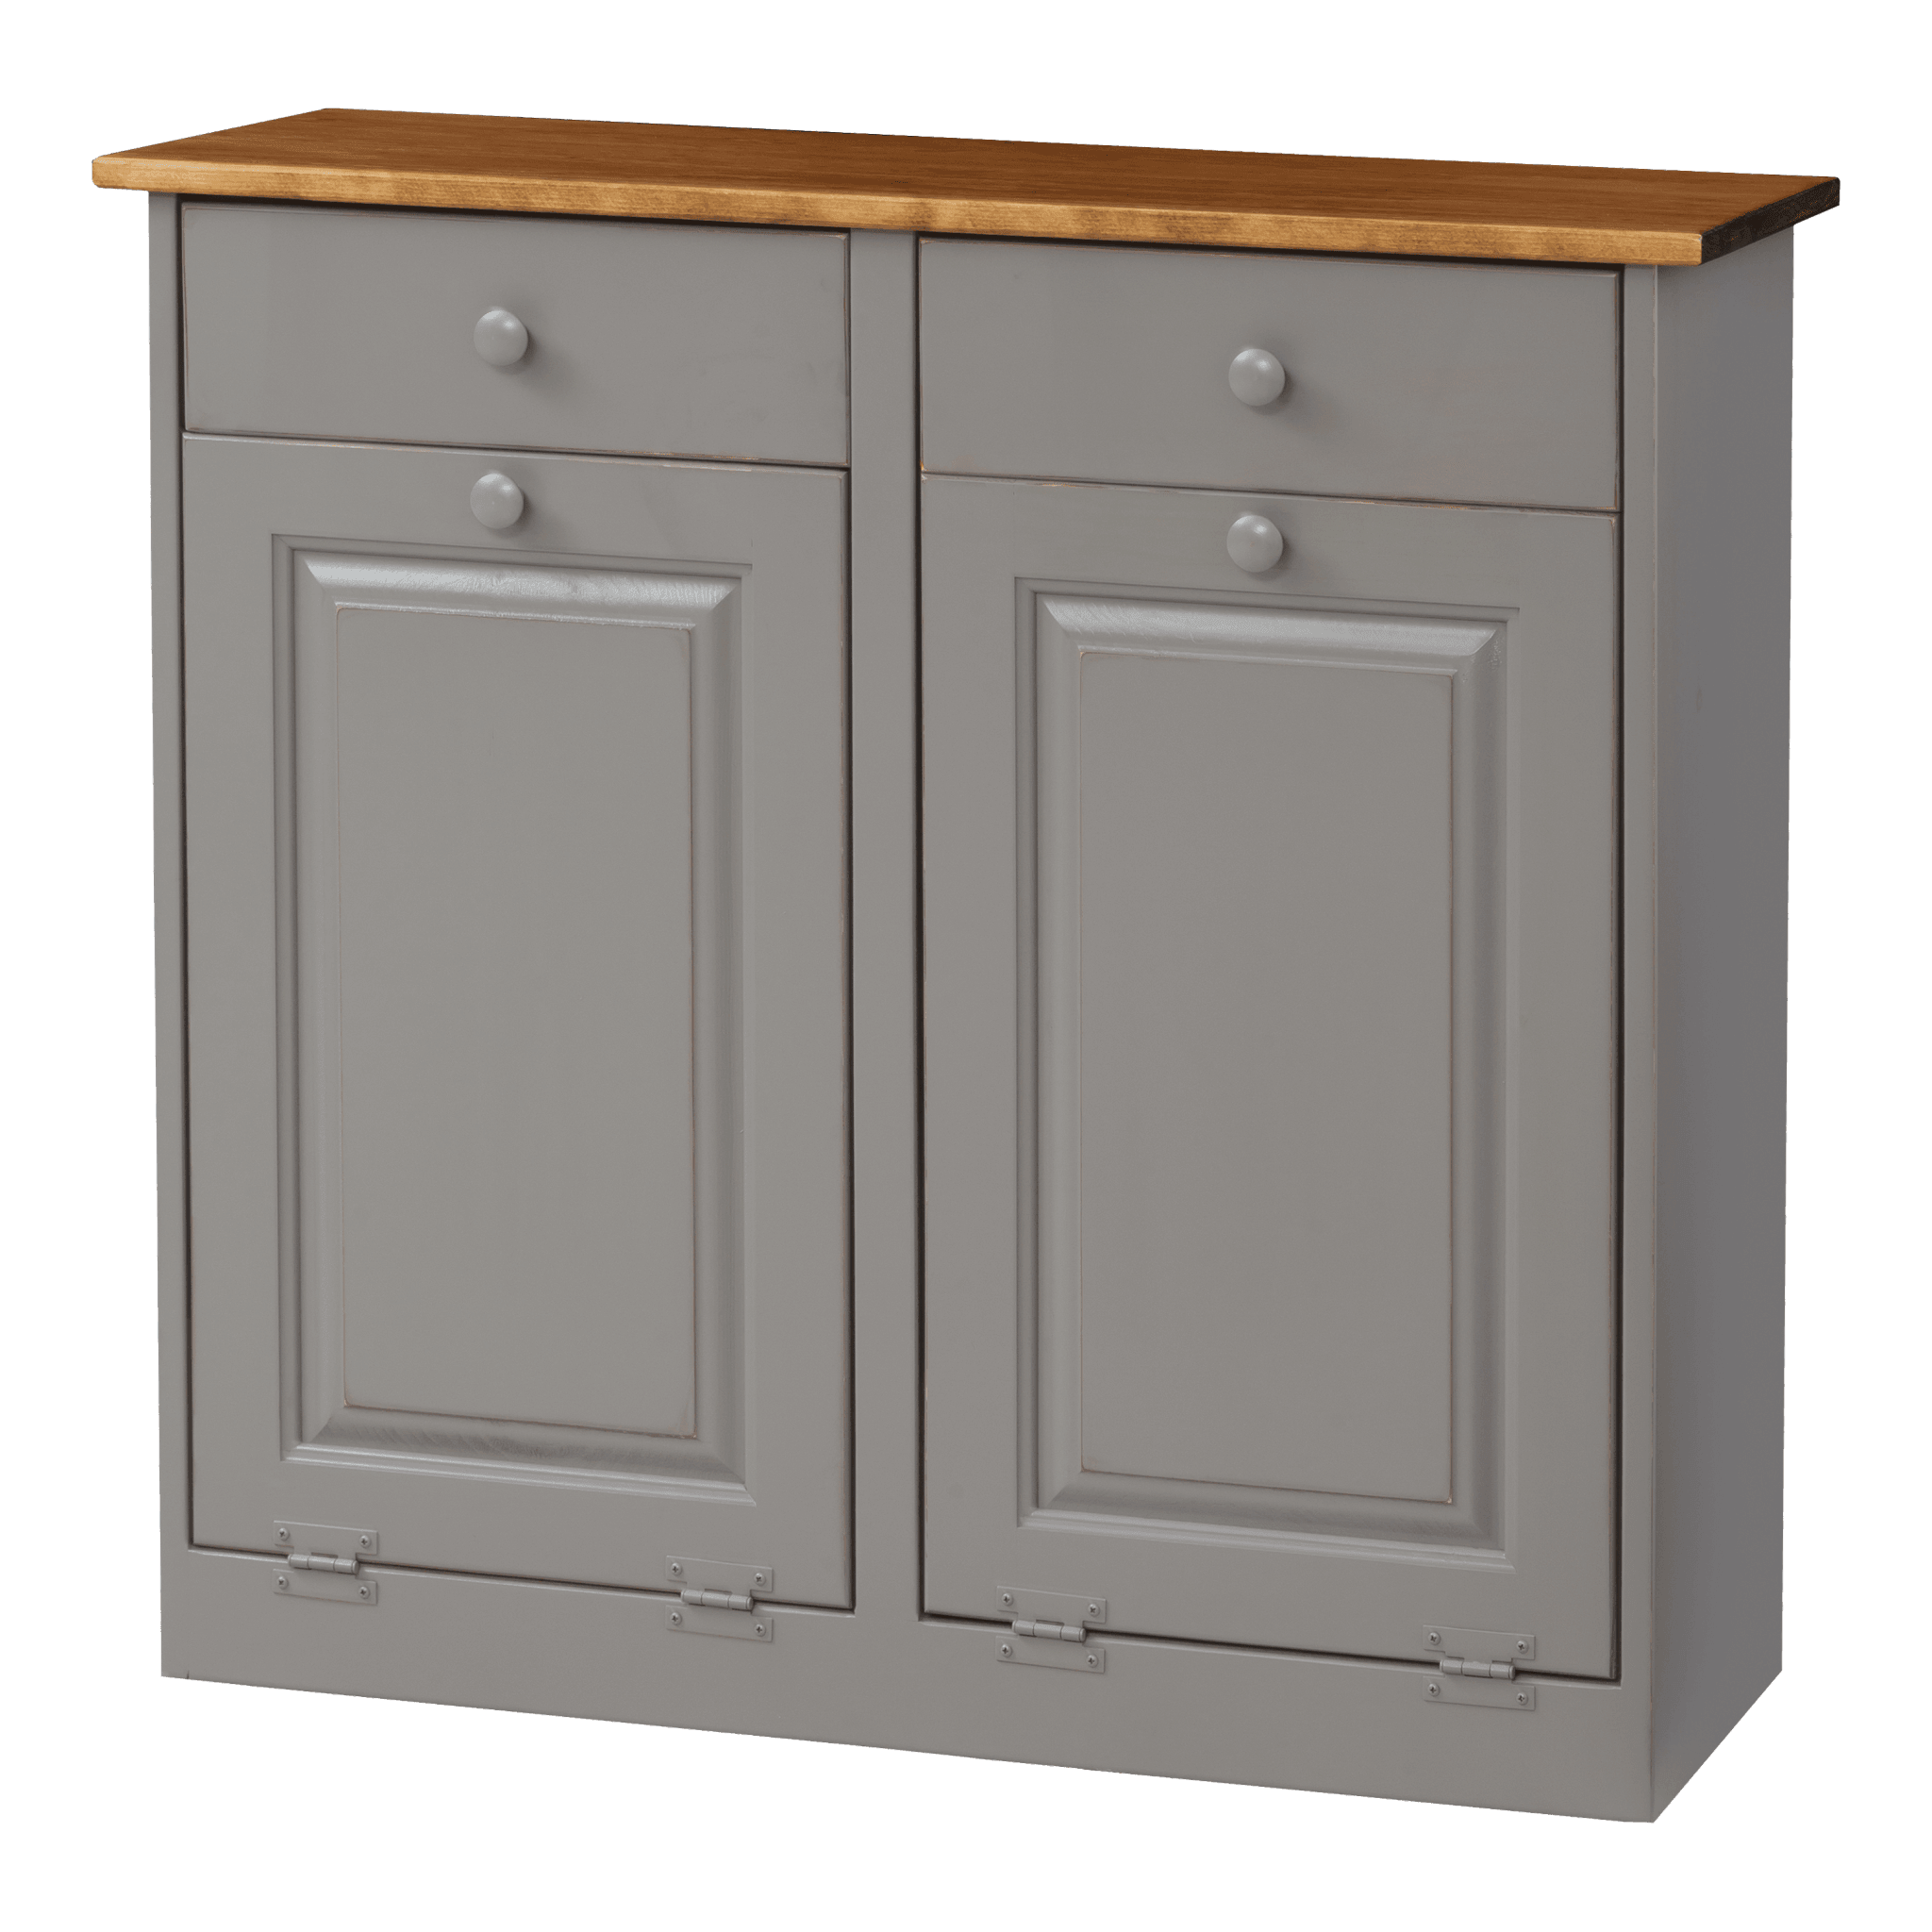 Double Trash Bin Cabinet w Wood